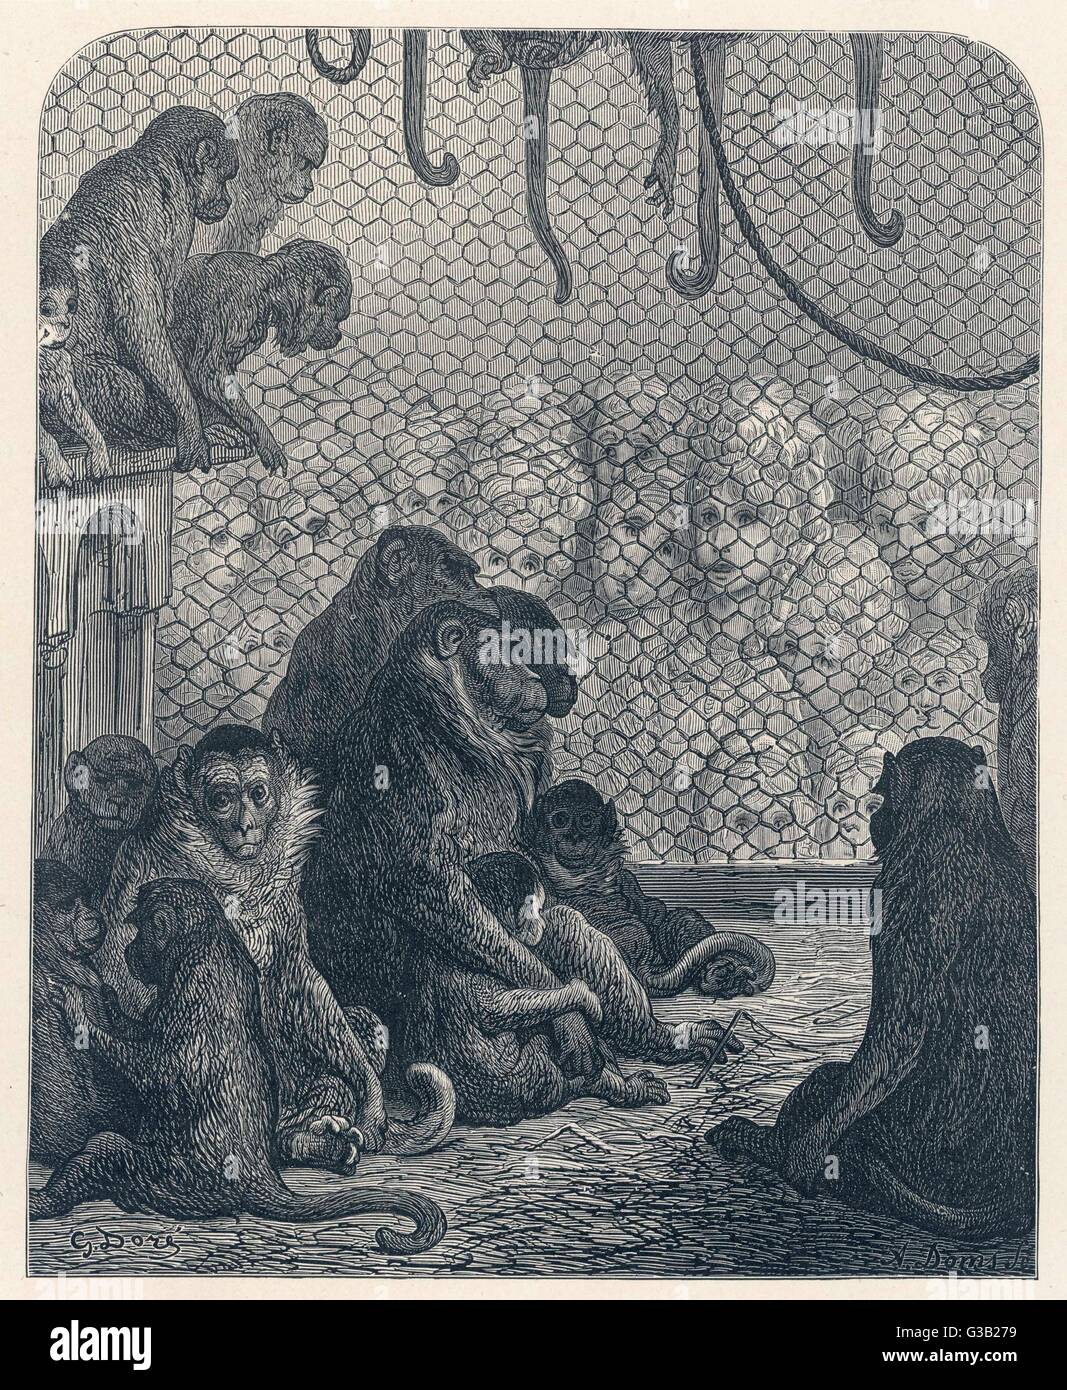 Una squallida gruppo di scimmie lo sguardo al di fuori della loro gabbia, come un grande raduno di donne fissare stabilmente al loro - uno dei Dore più suggestivi commenti sulla società di Londra. Data: 1870 Foto Stock